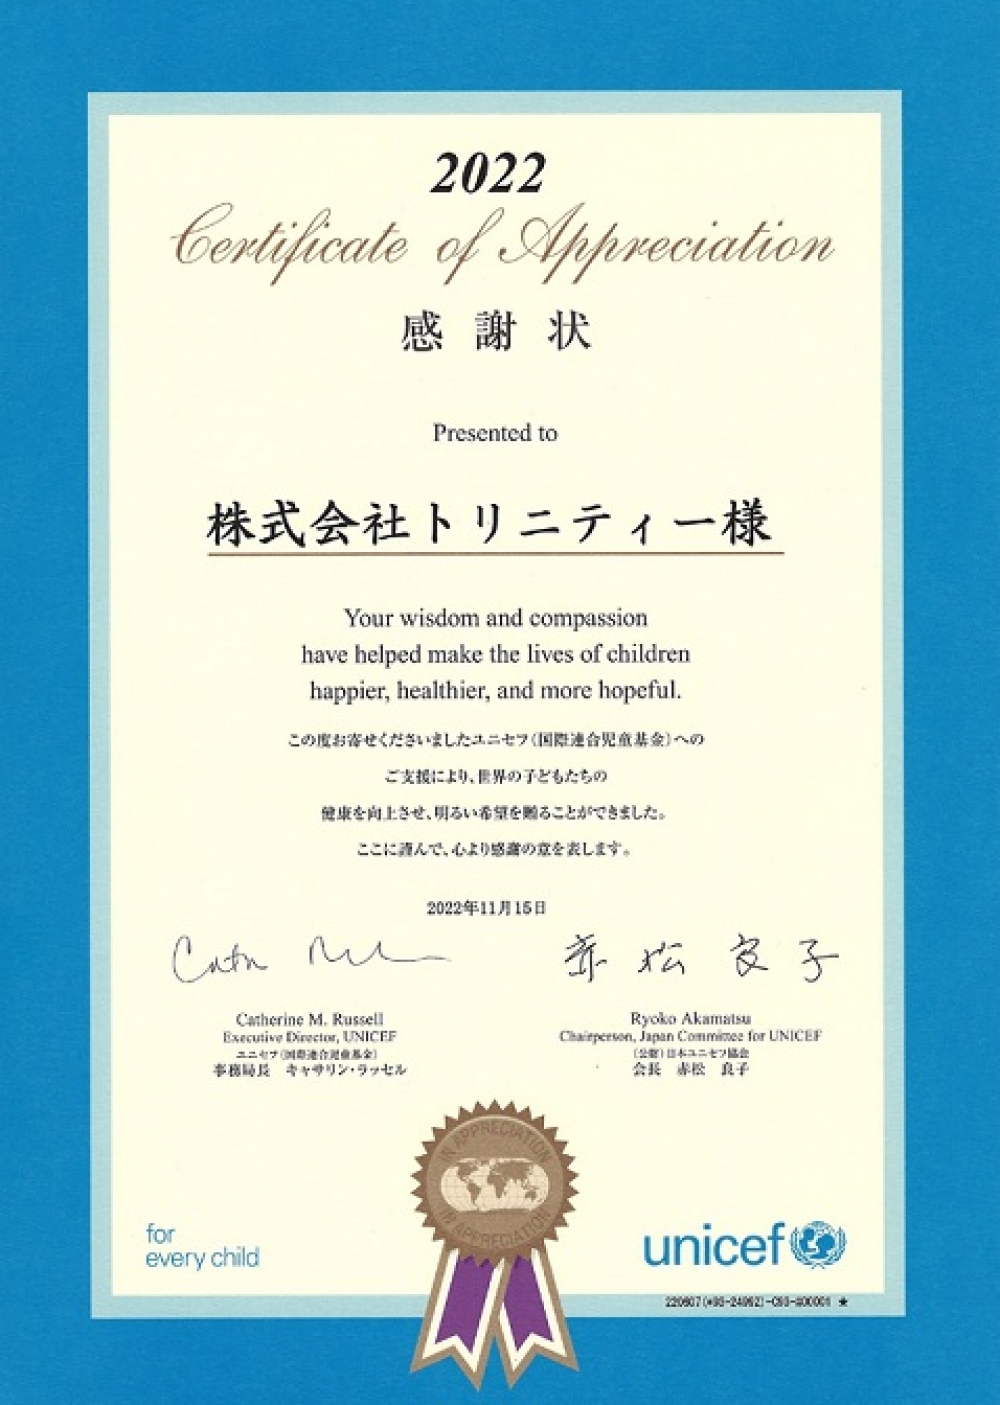 日本ユニセフ協会の「ウクライナ緊急募金」に寄付しました